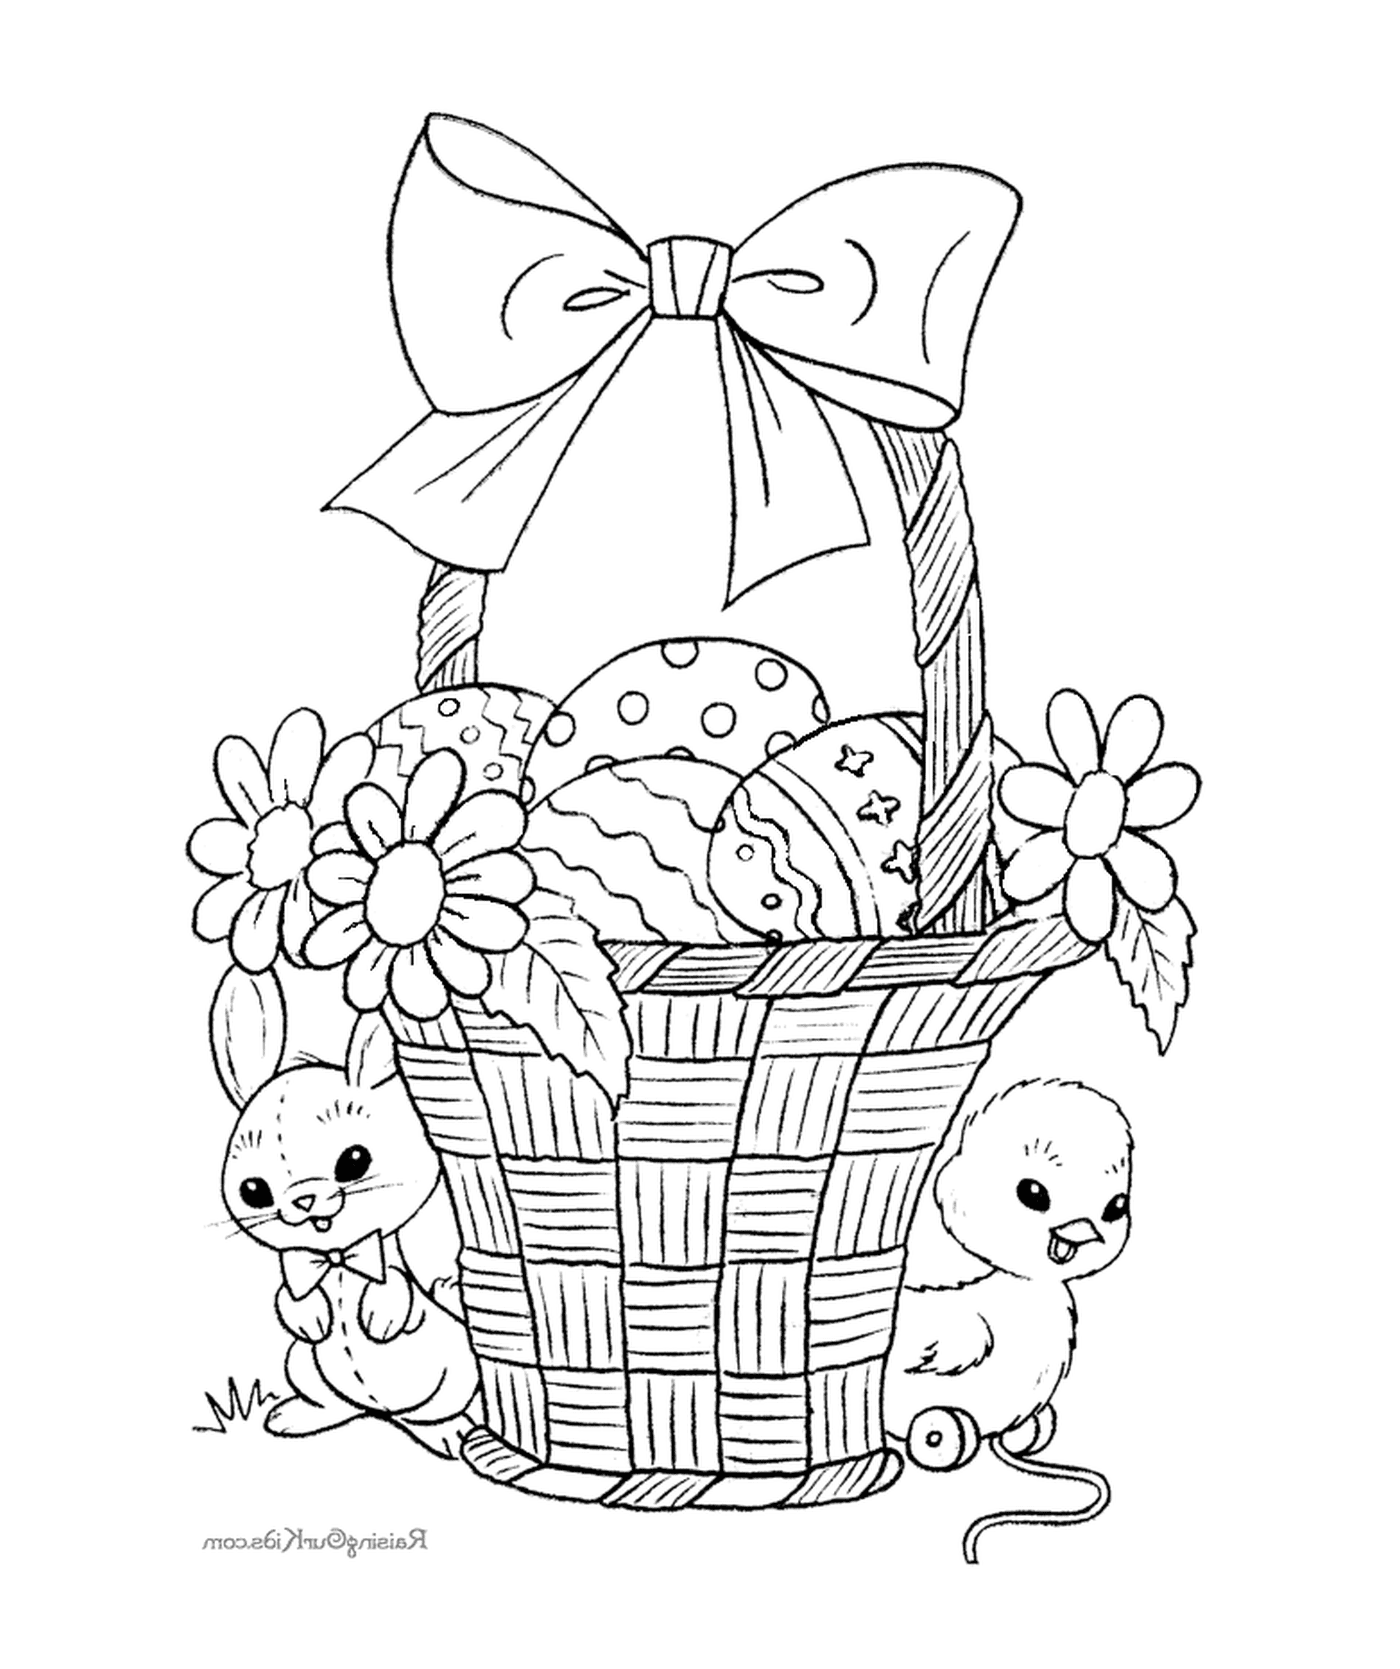  装满复活节鸡蛋和兔子的篮子 